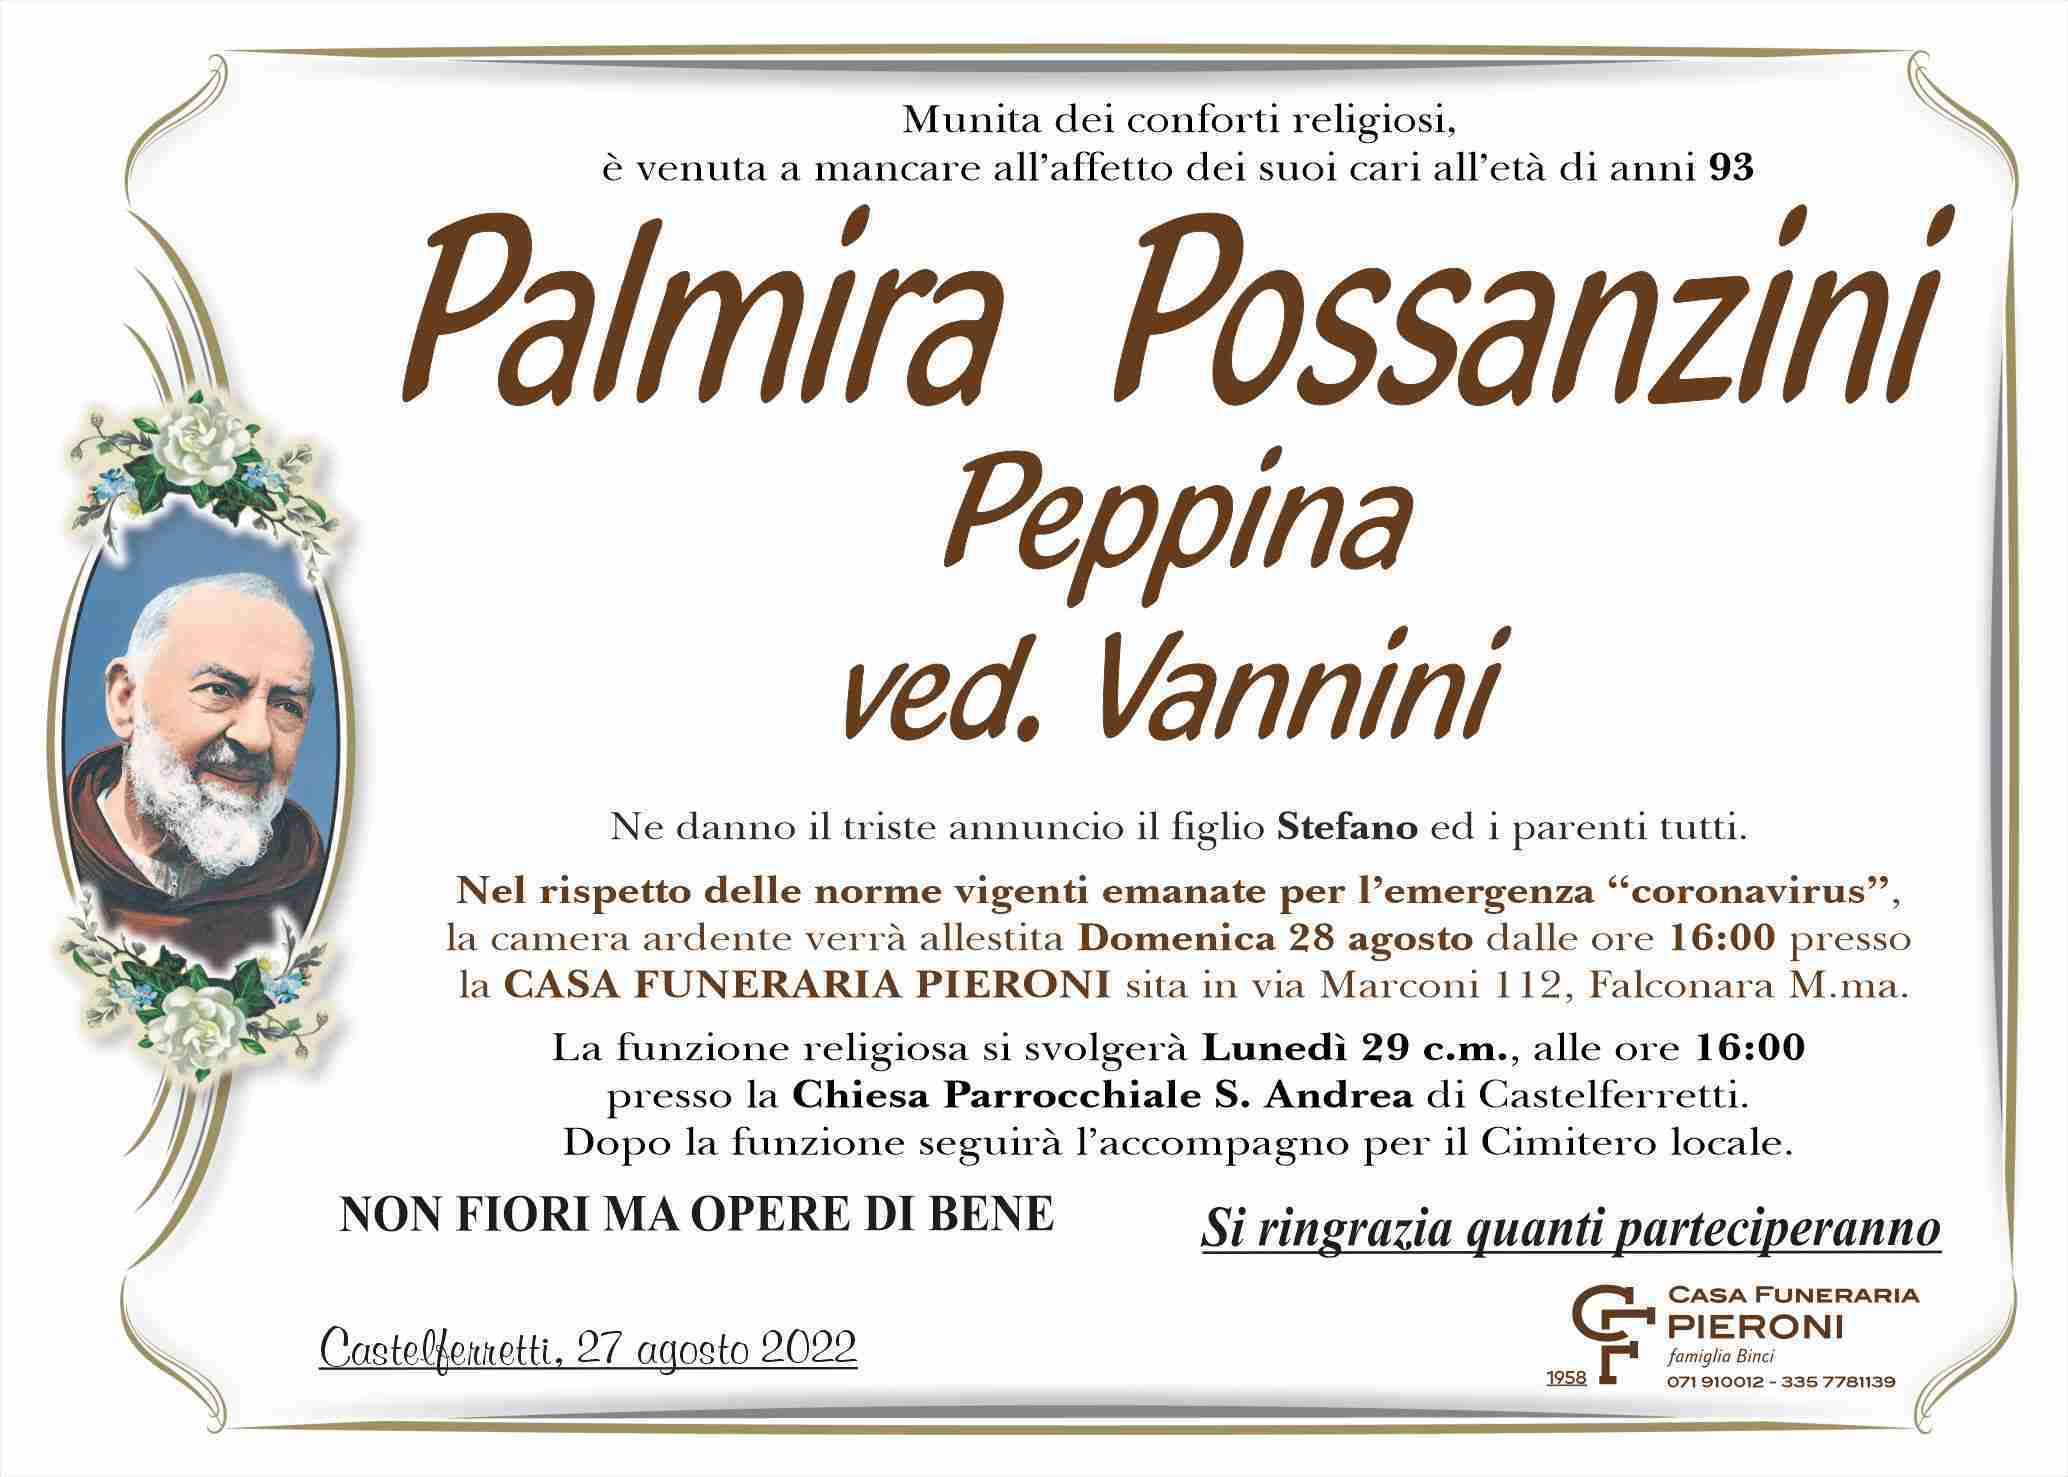 Palmira Possanzini